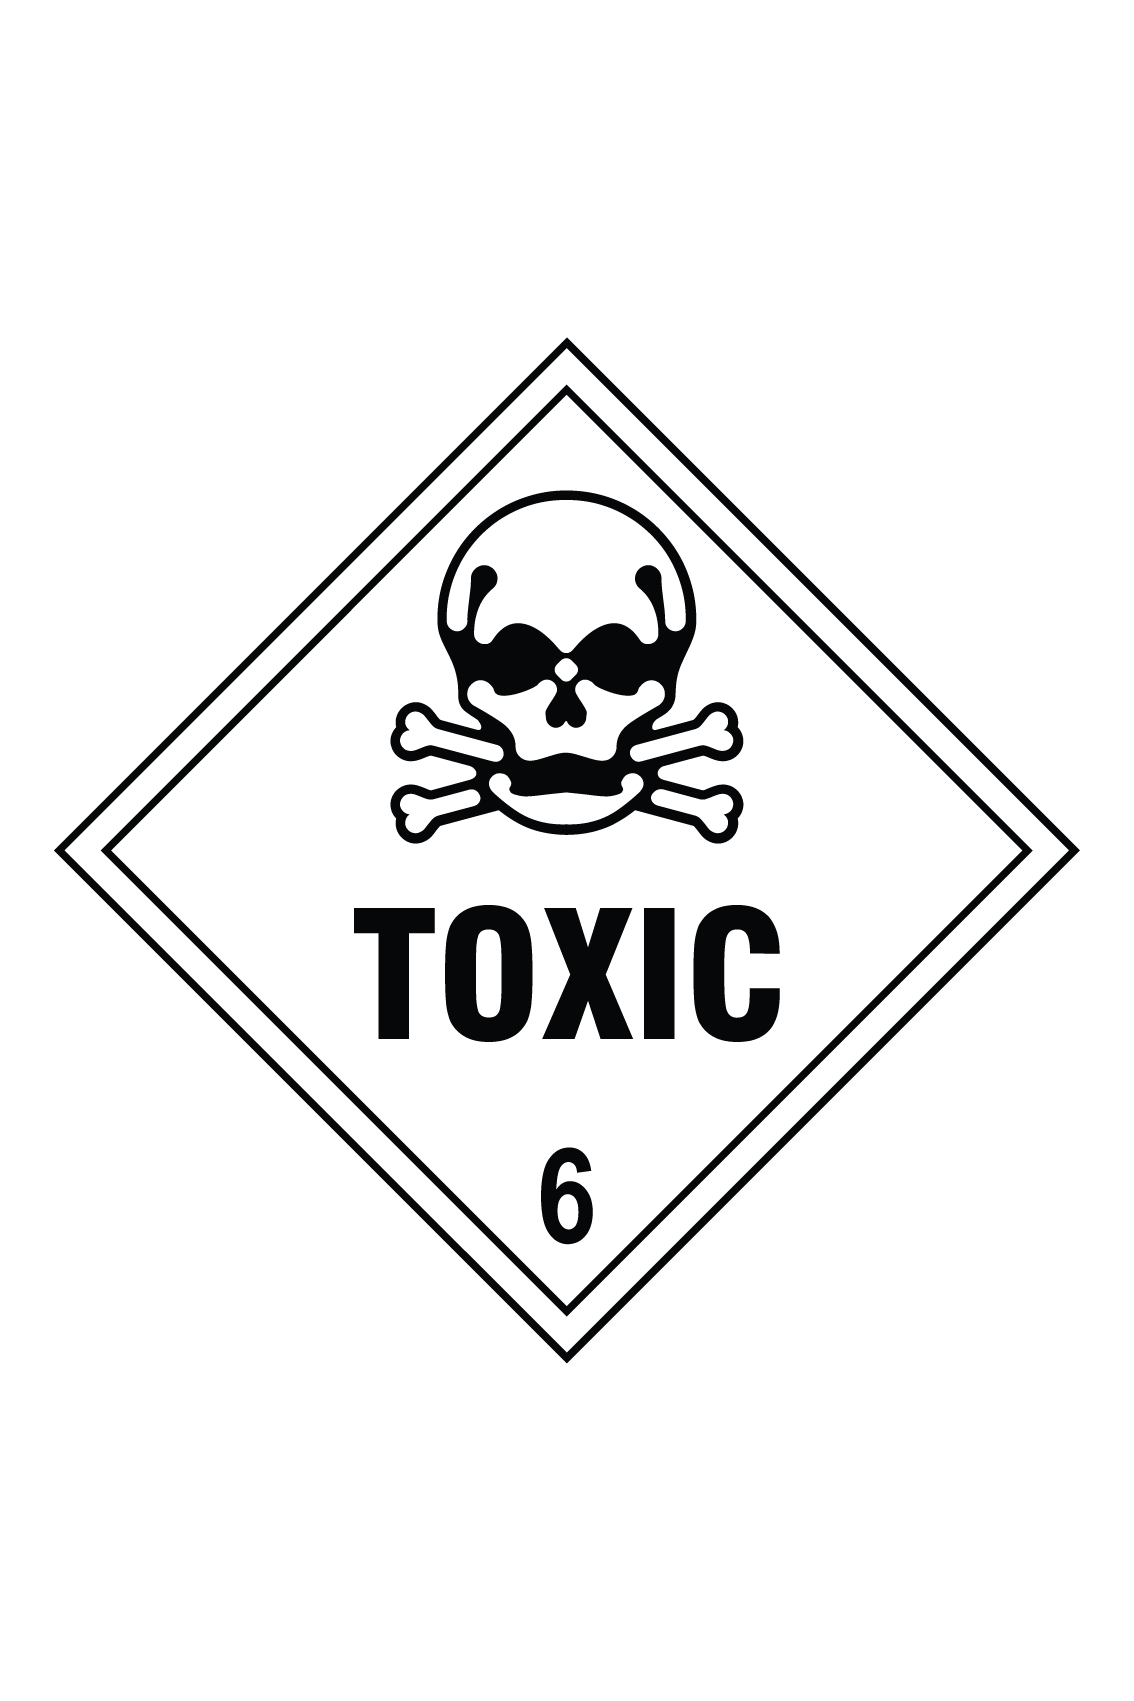 Отрава 6. Токсичные Стикеры. Знак опасности 6.1. Poison картинки. Наклейка Toxic.